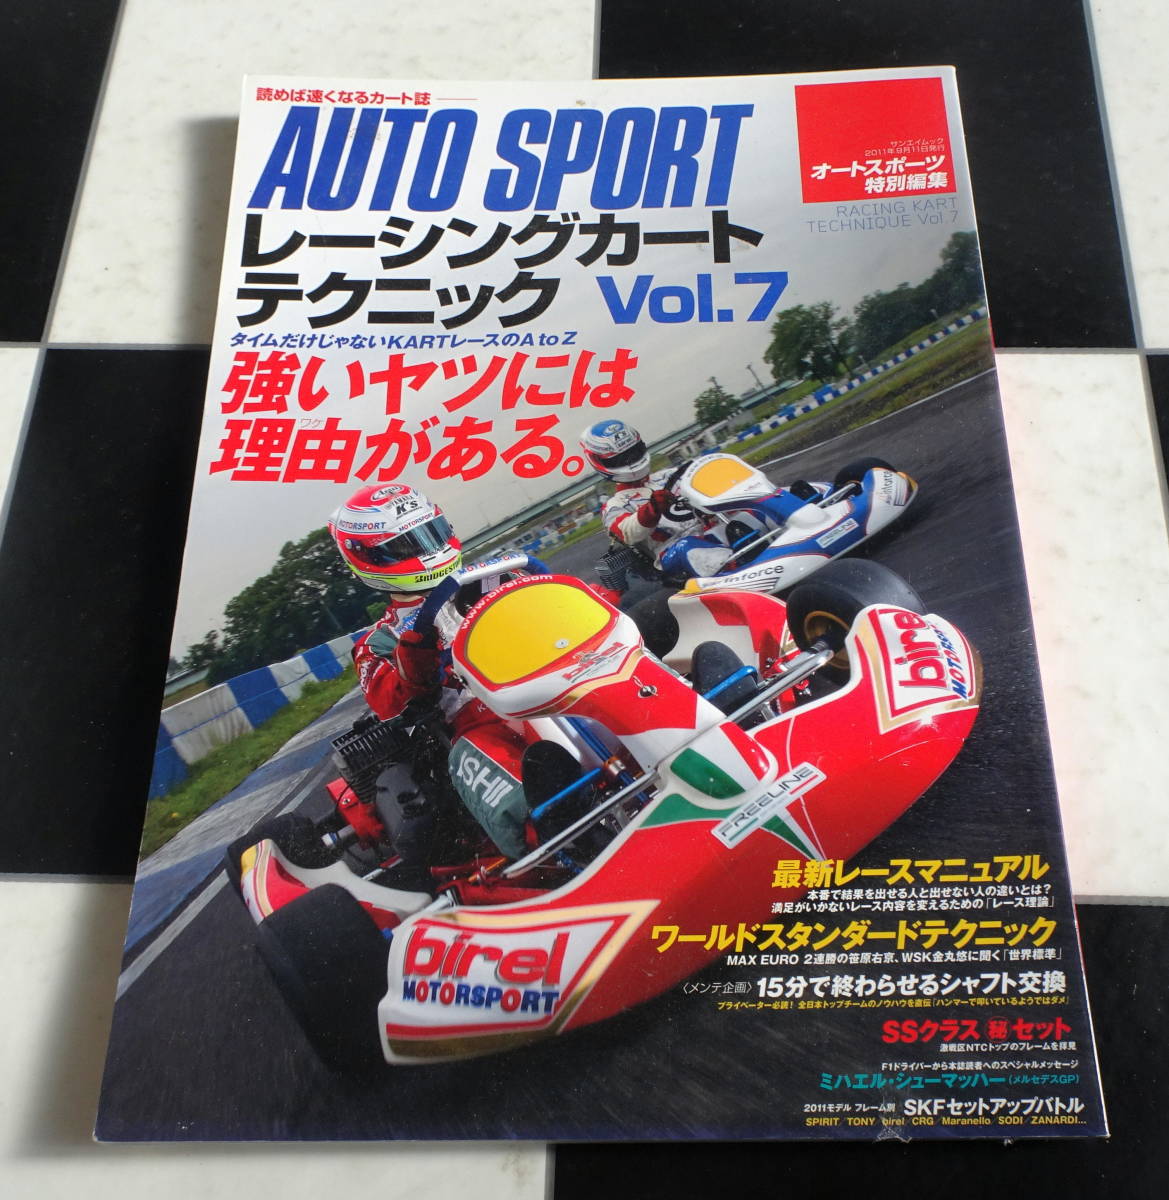 【AUTO SPORT】レーシングカートテクニック Vol.7 タイムだけじゃないKARTレースのAtoZ 強いヤツには理由がある。の画像1